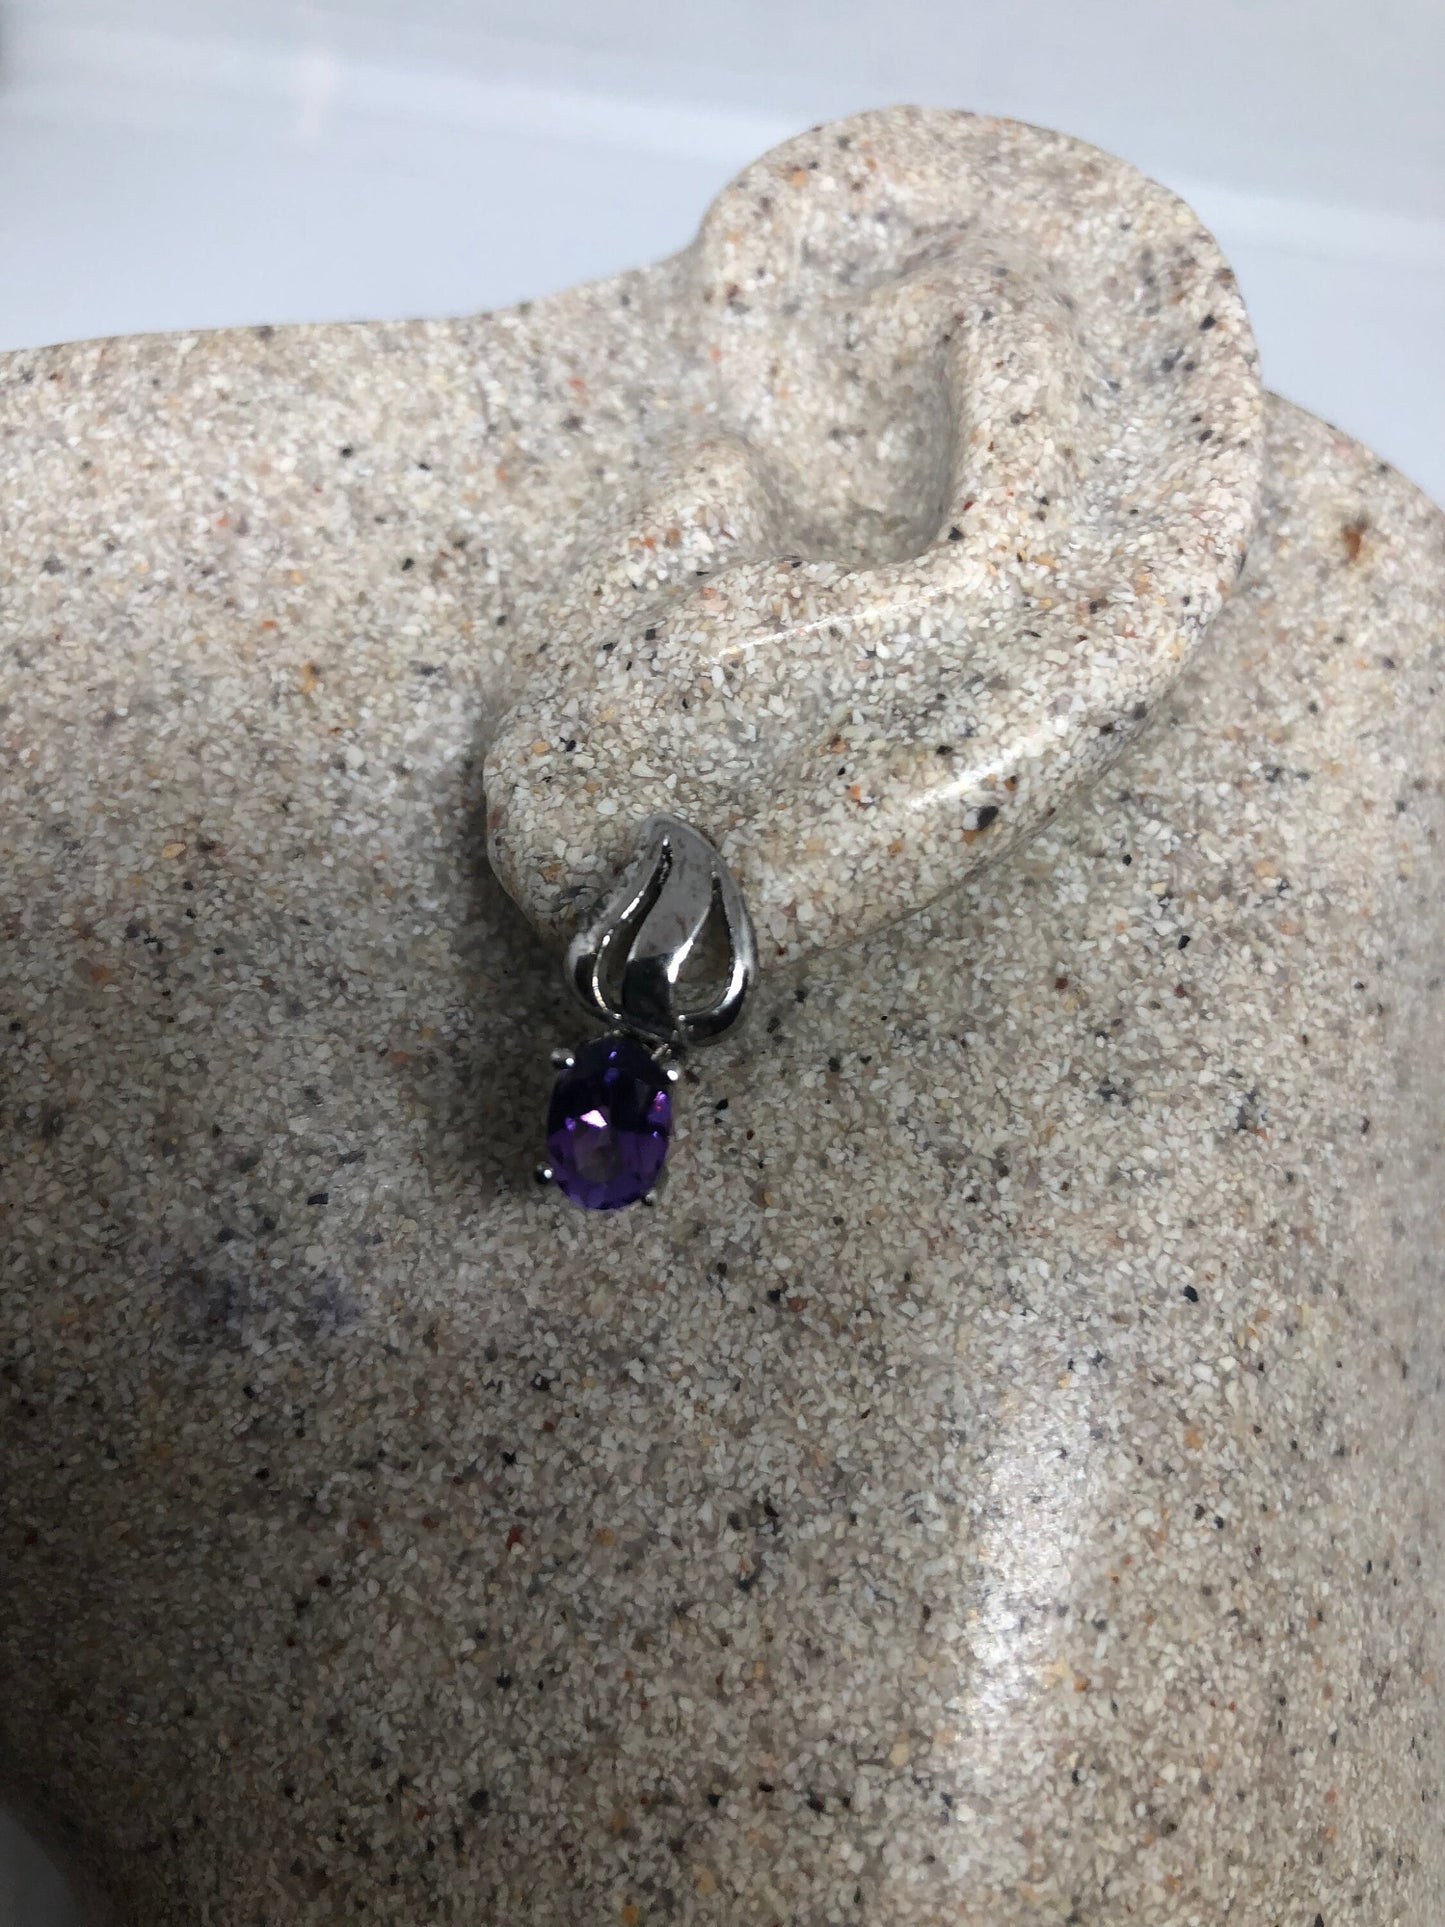 Vintage Amethyst Earrings 925 Sterling Silver Purple Stud Button